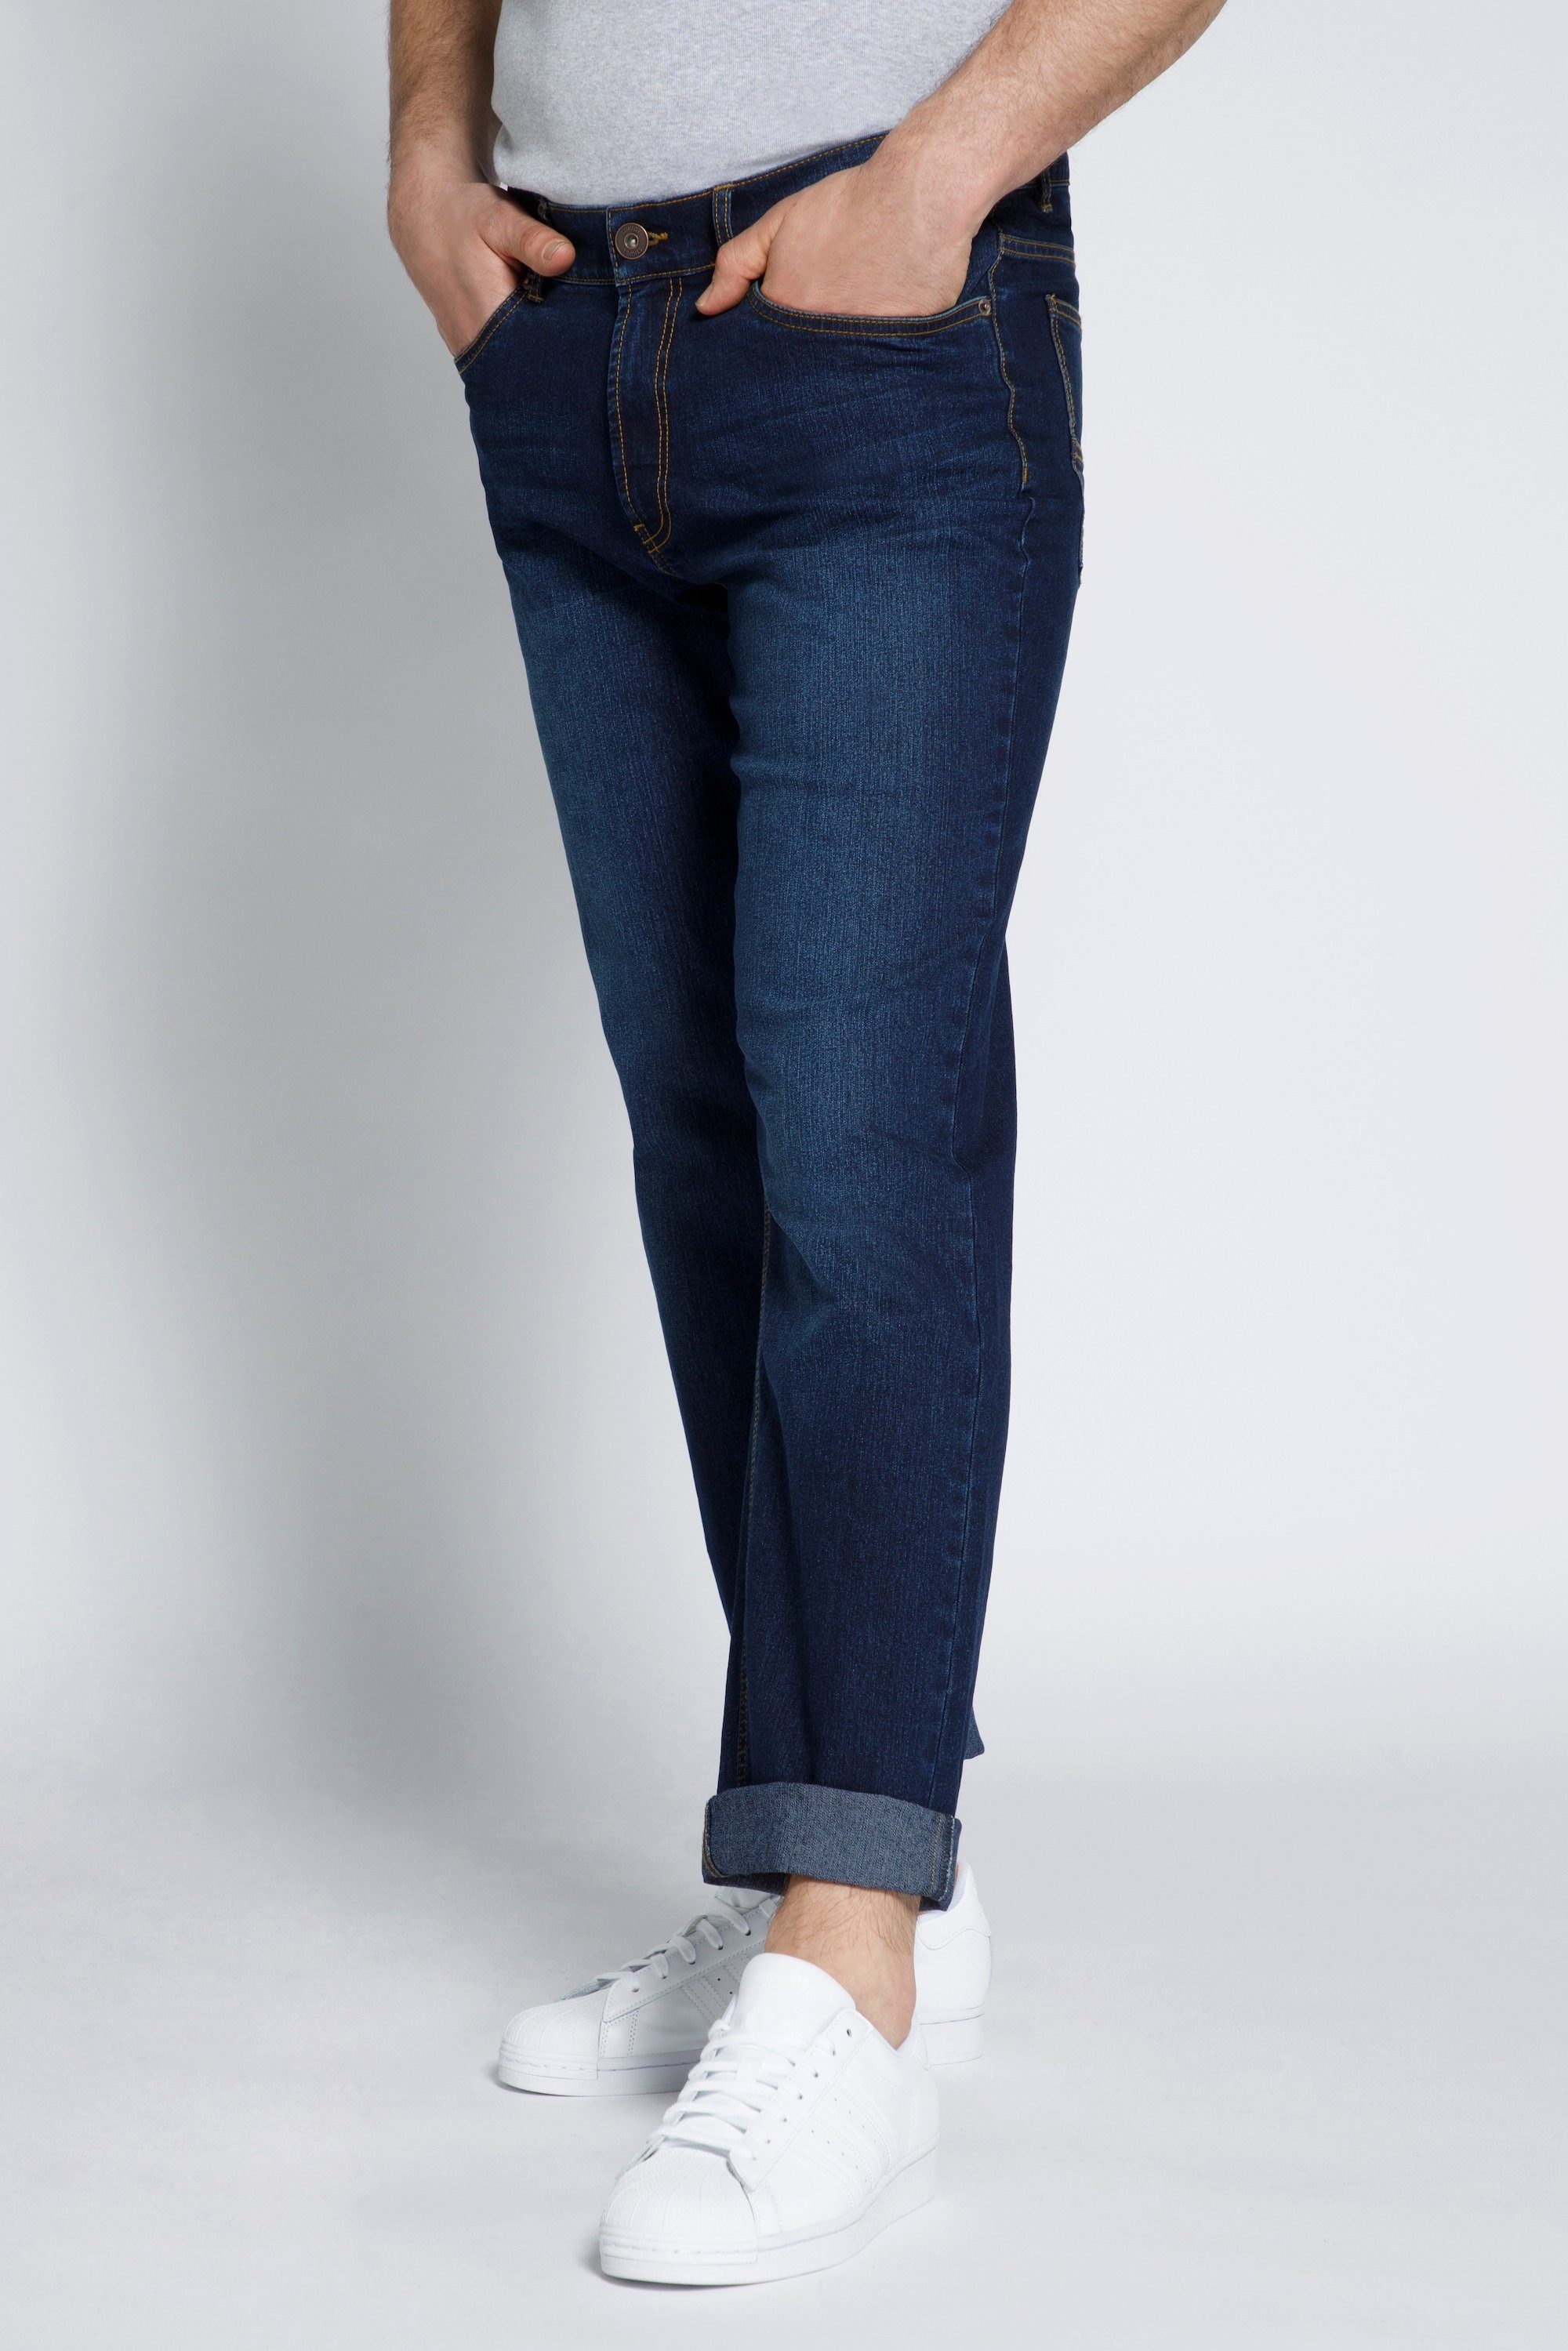 STHUGE 5-Pocket-Jeans STHUGE Jeans Bauch Fit Regular Fit 5 Pocket dark blue denim